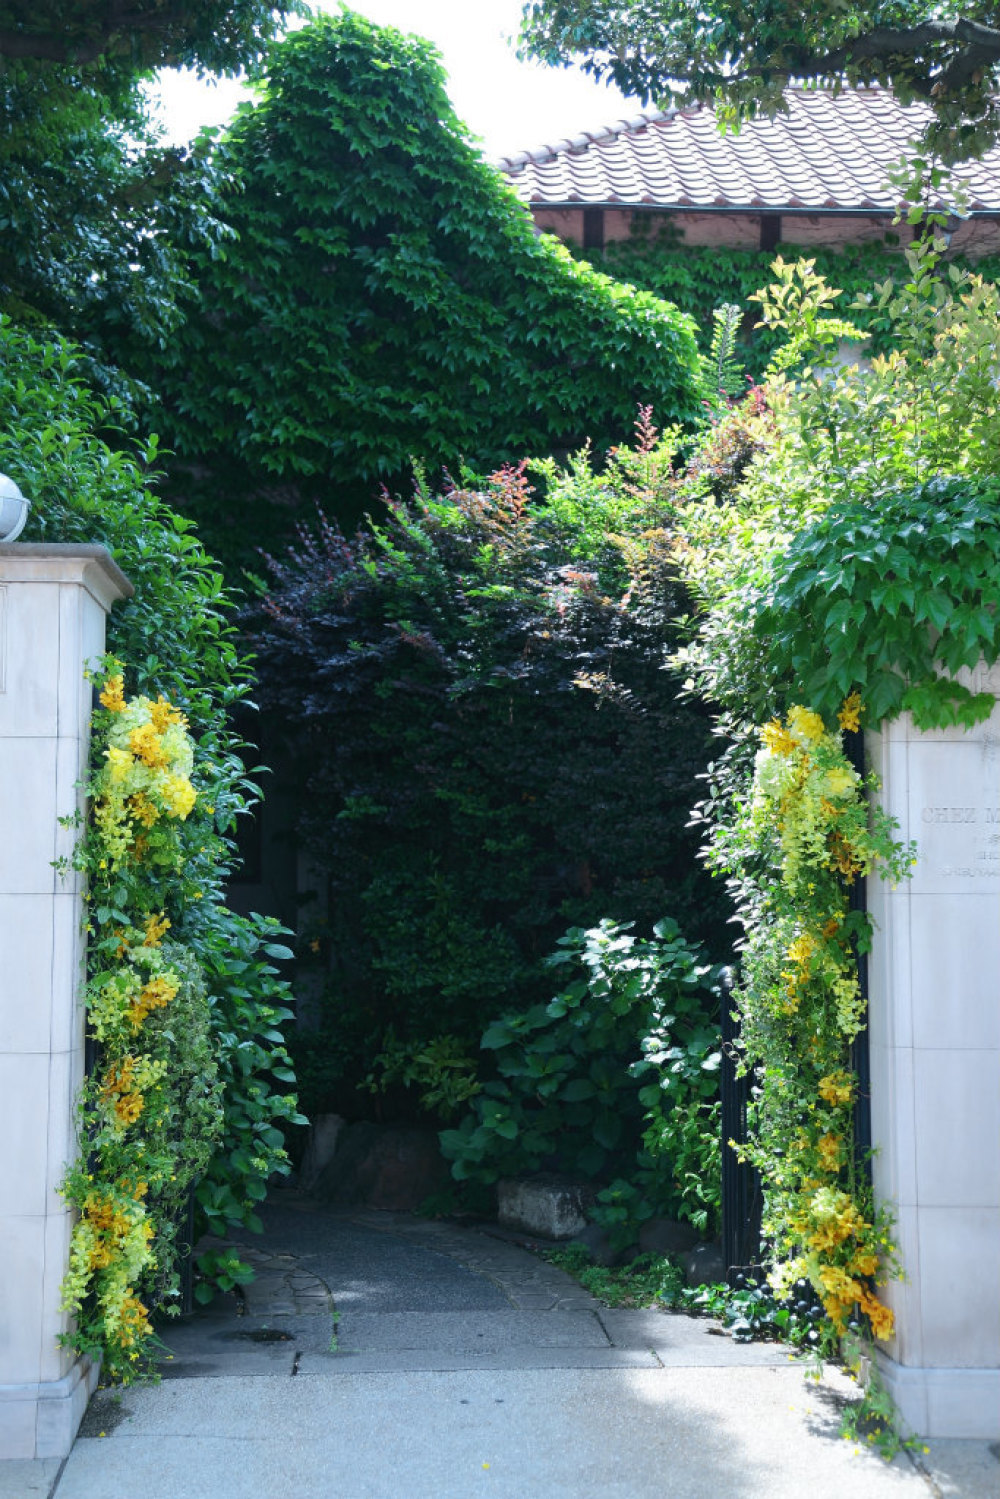 初夏の装花 3種の蘭の門柱装花 シェ松尾松濤レストラン様のウェディングへ_a0042928_21092688.jpg